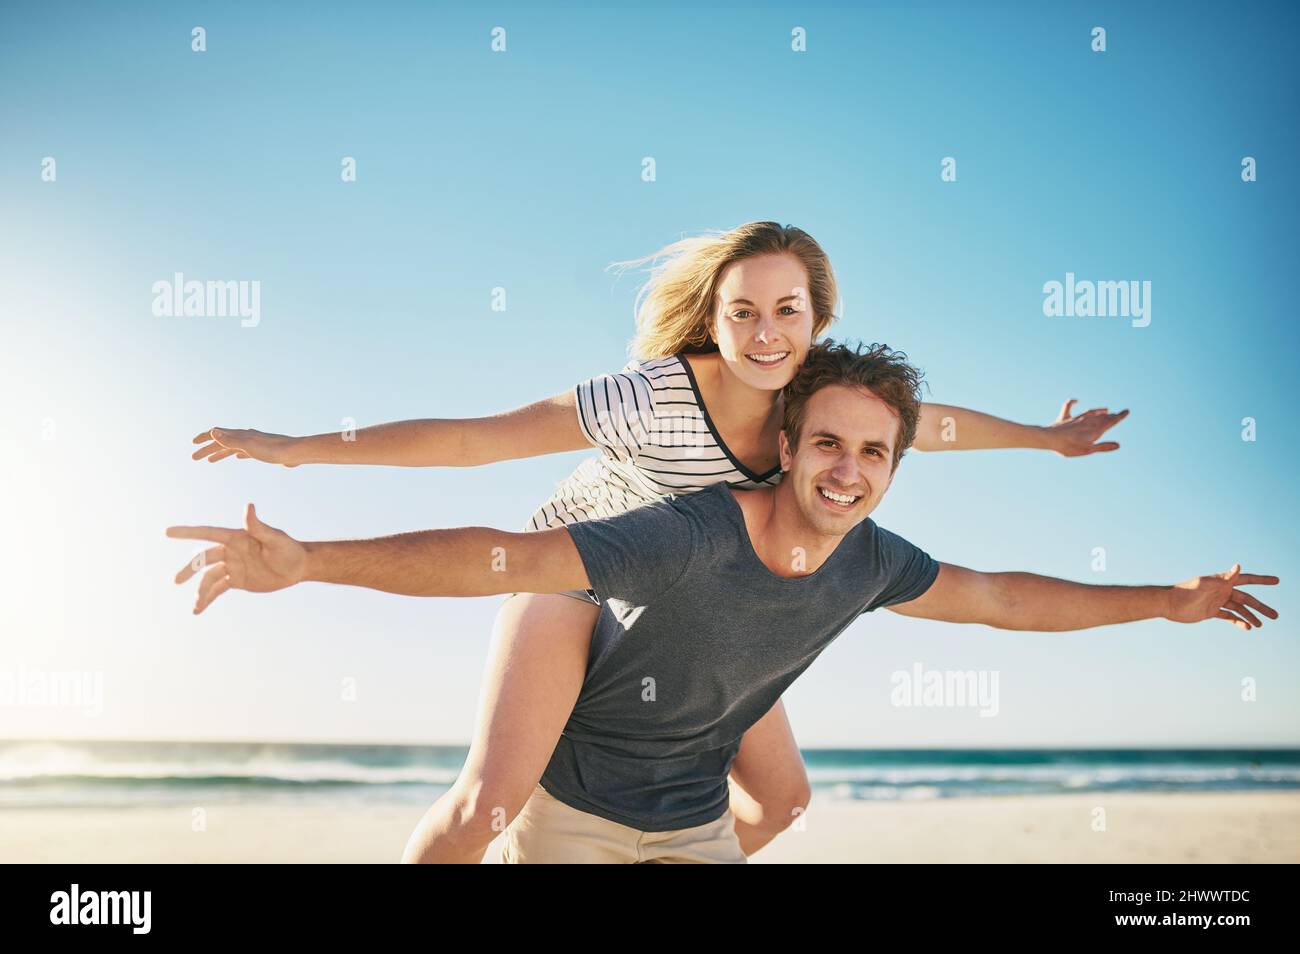 Liebe lässt uns lebendig fühlen. Aufnahme eines glücklichen jungen Paares, das eine Huckepack-Fahrt am Strand genießt. Stockfoto